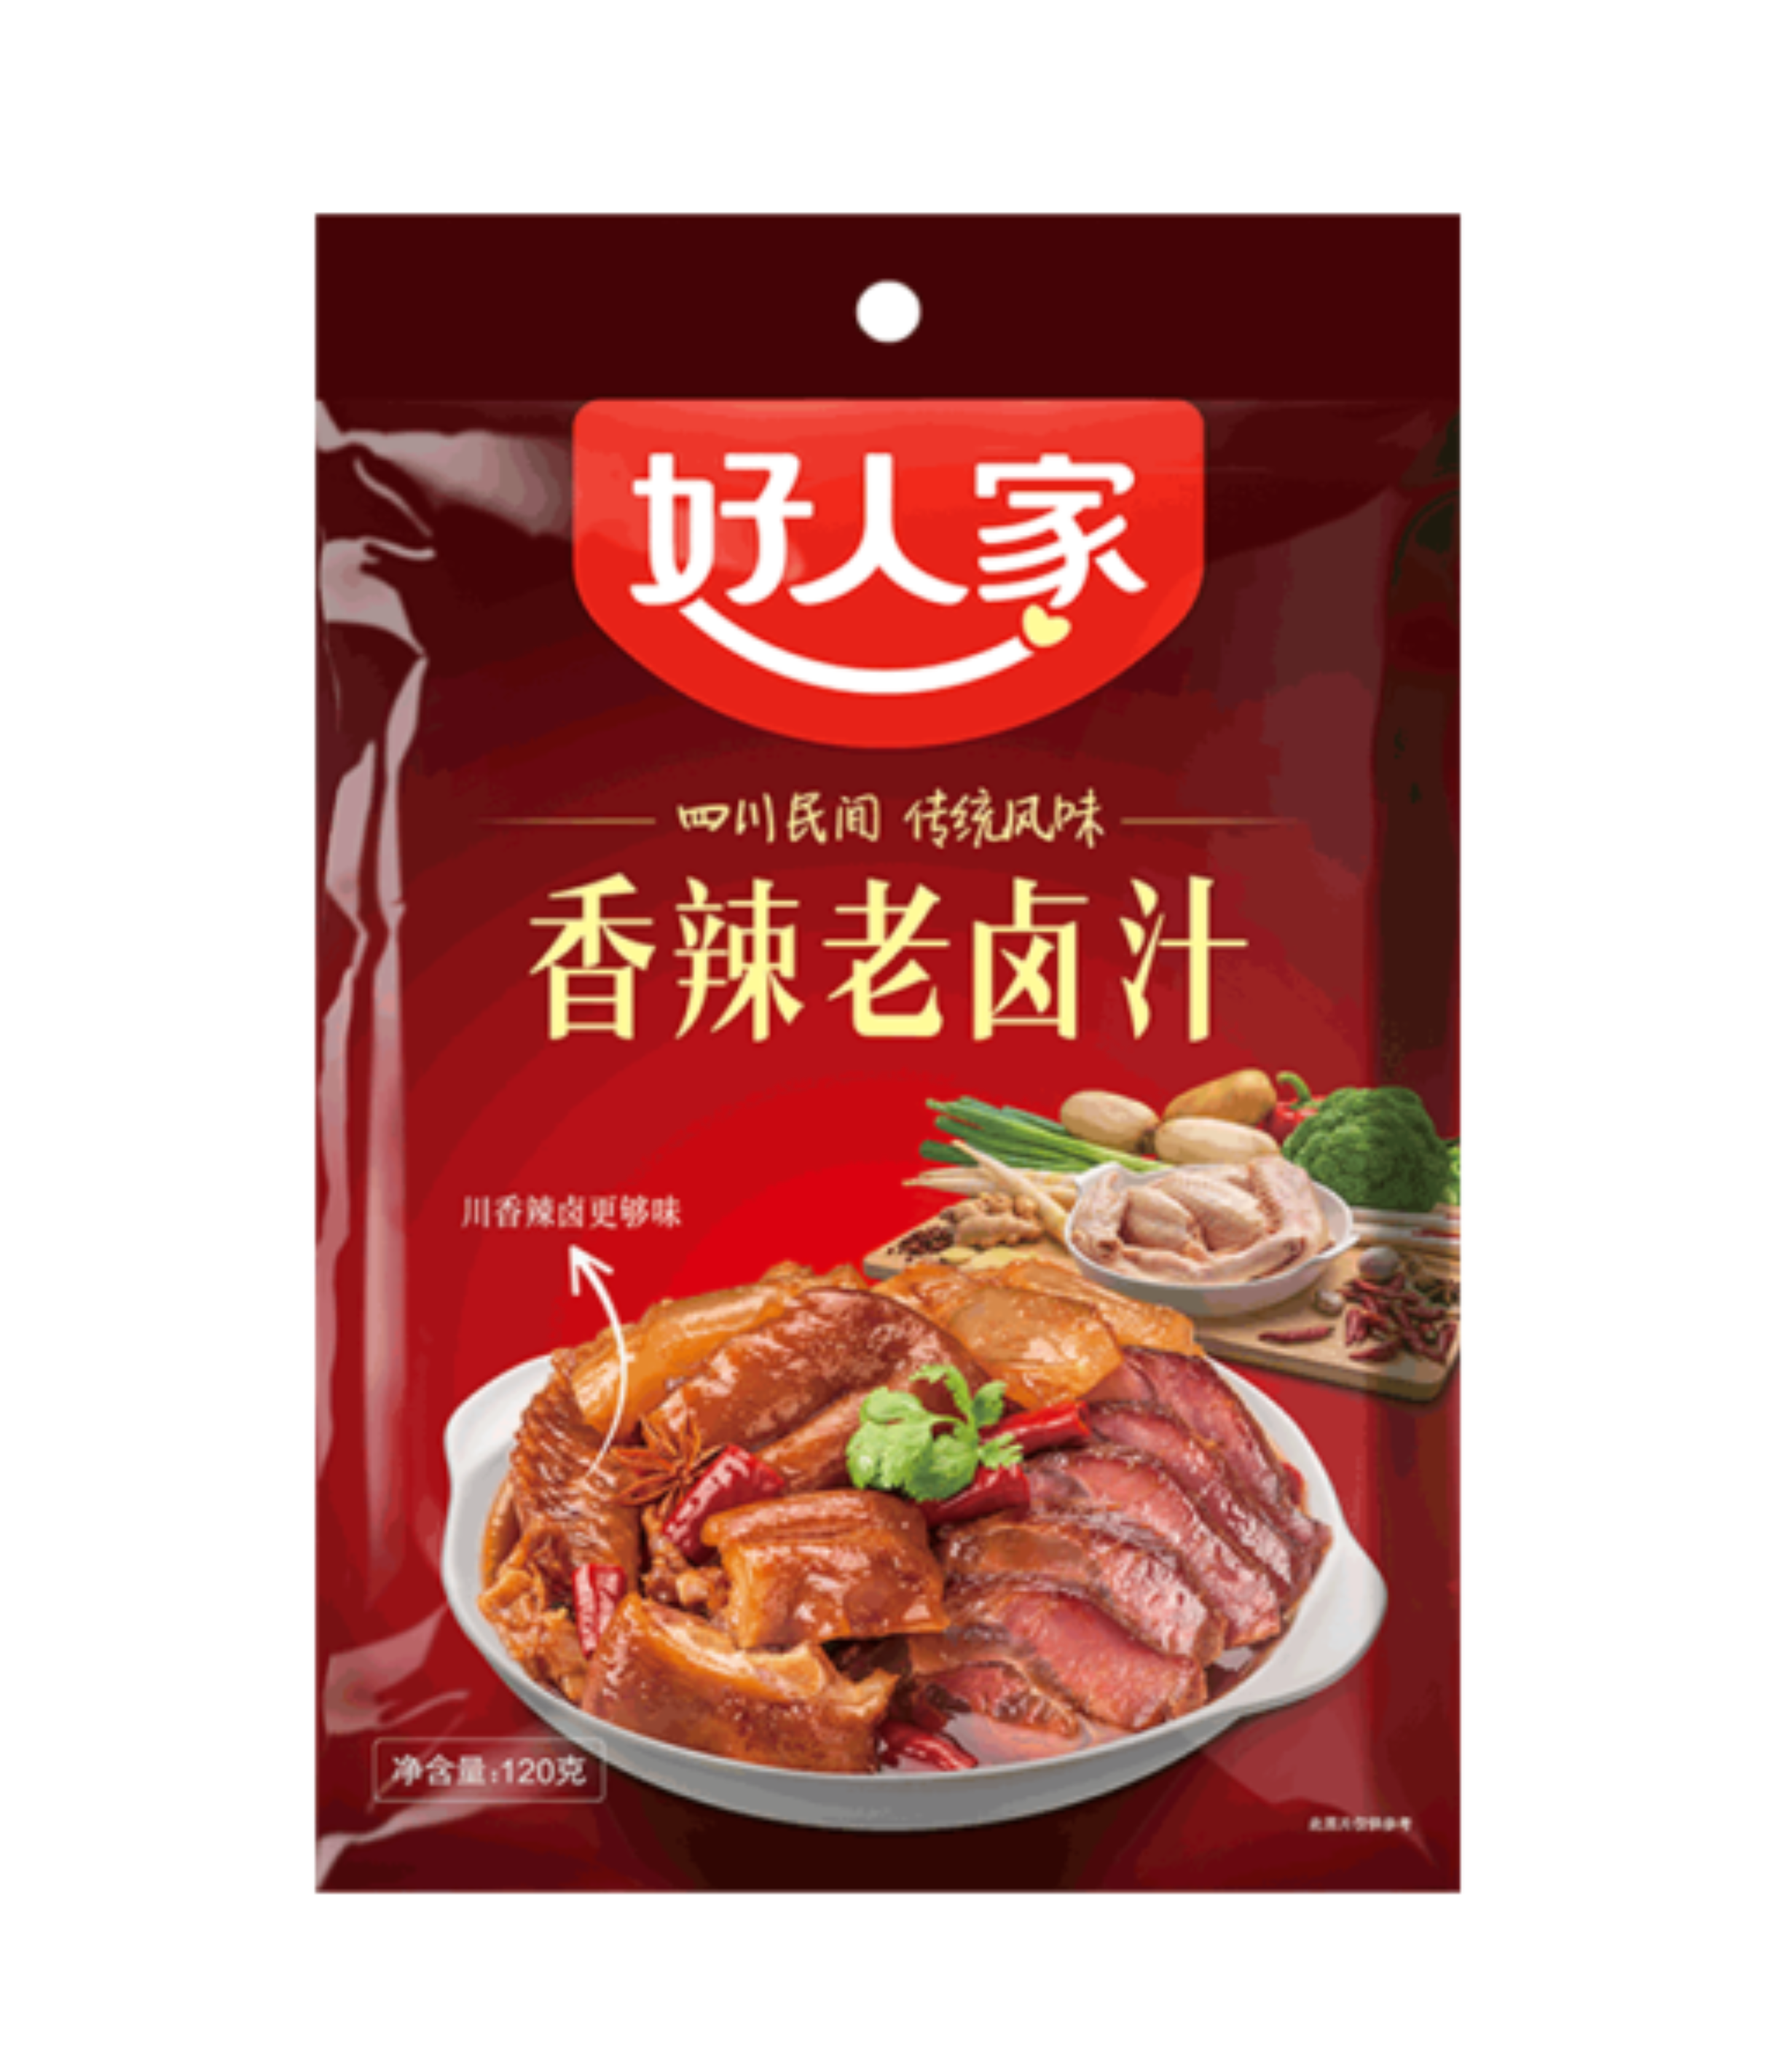 Hao Ren Jia Lake saus pittige smaak (好人家 香辣味老卤汁)